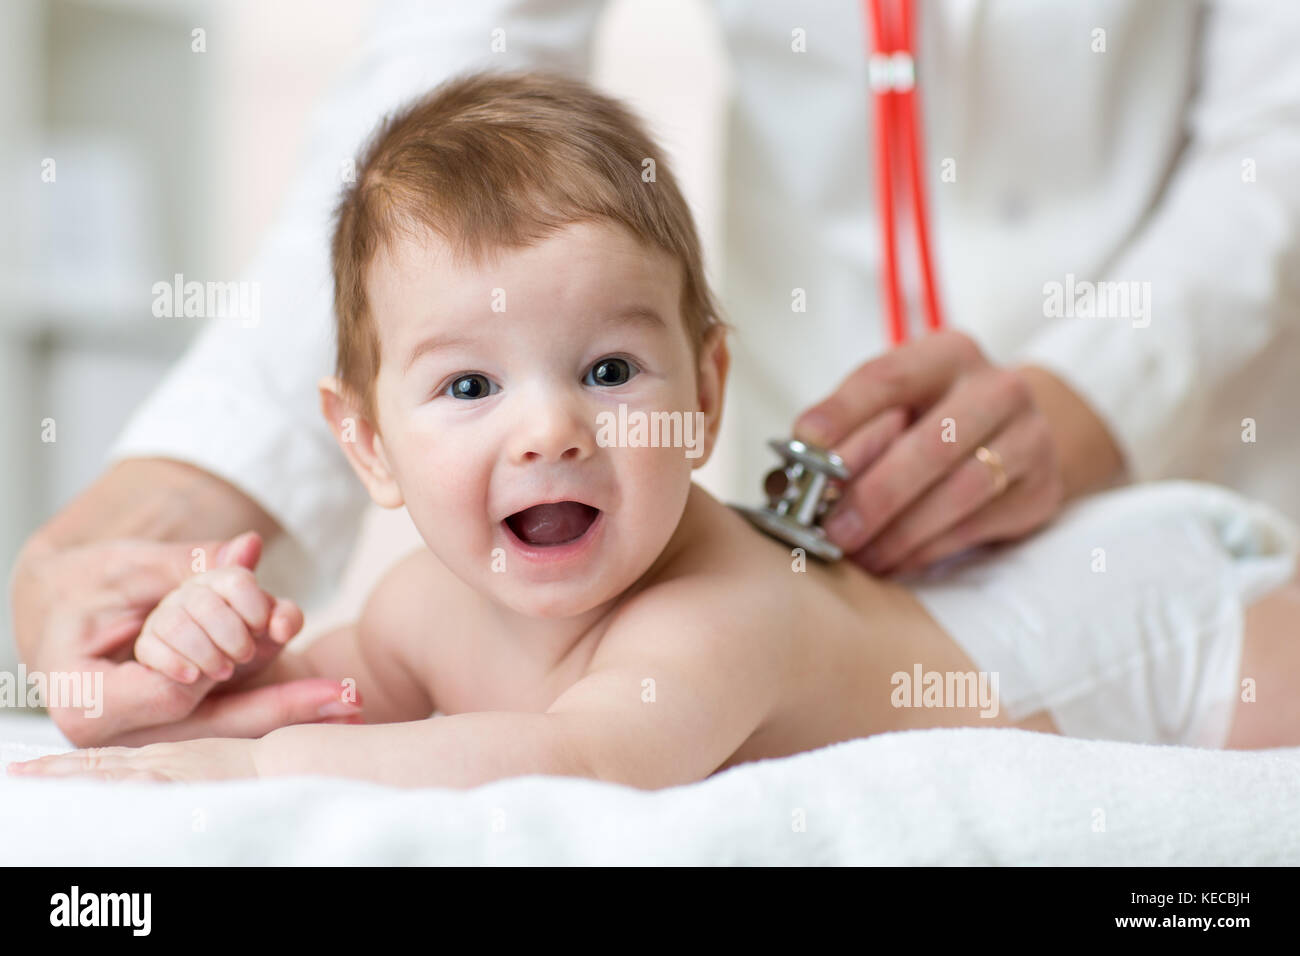 Kinderarzt Ärztin untersucht baby boy mit Stethoskop Kontrolle Herzschlag Stockfoto